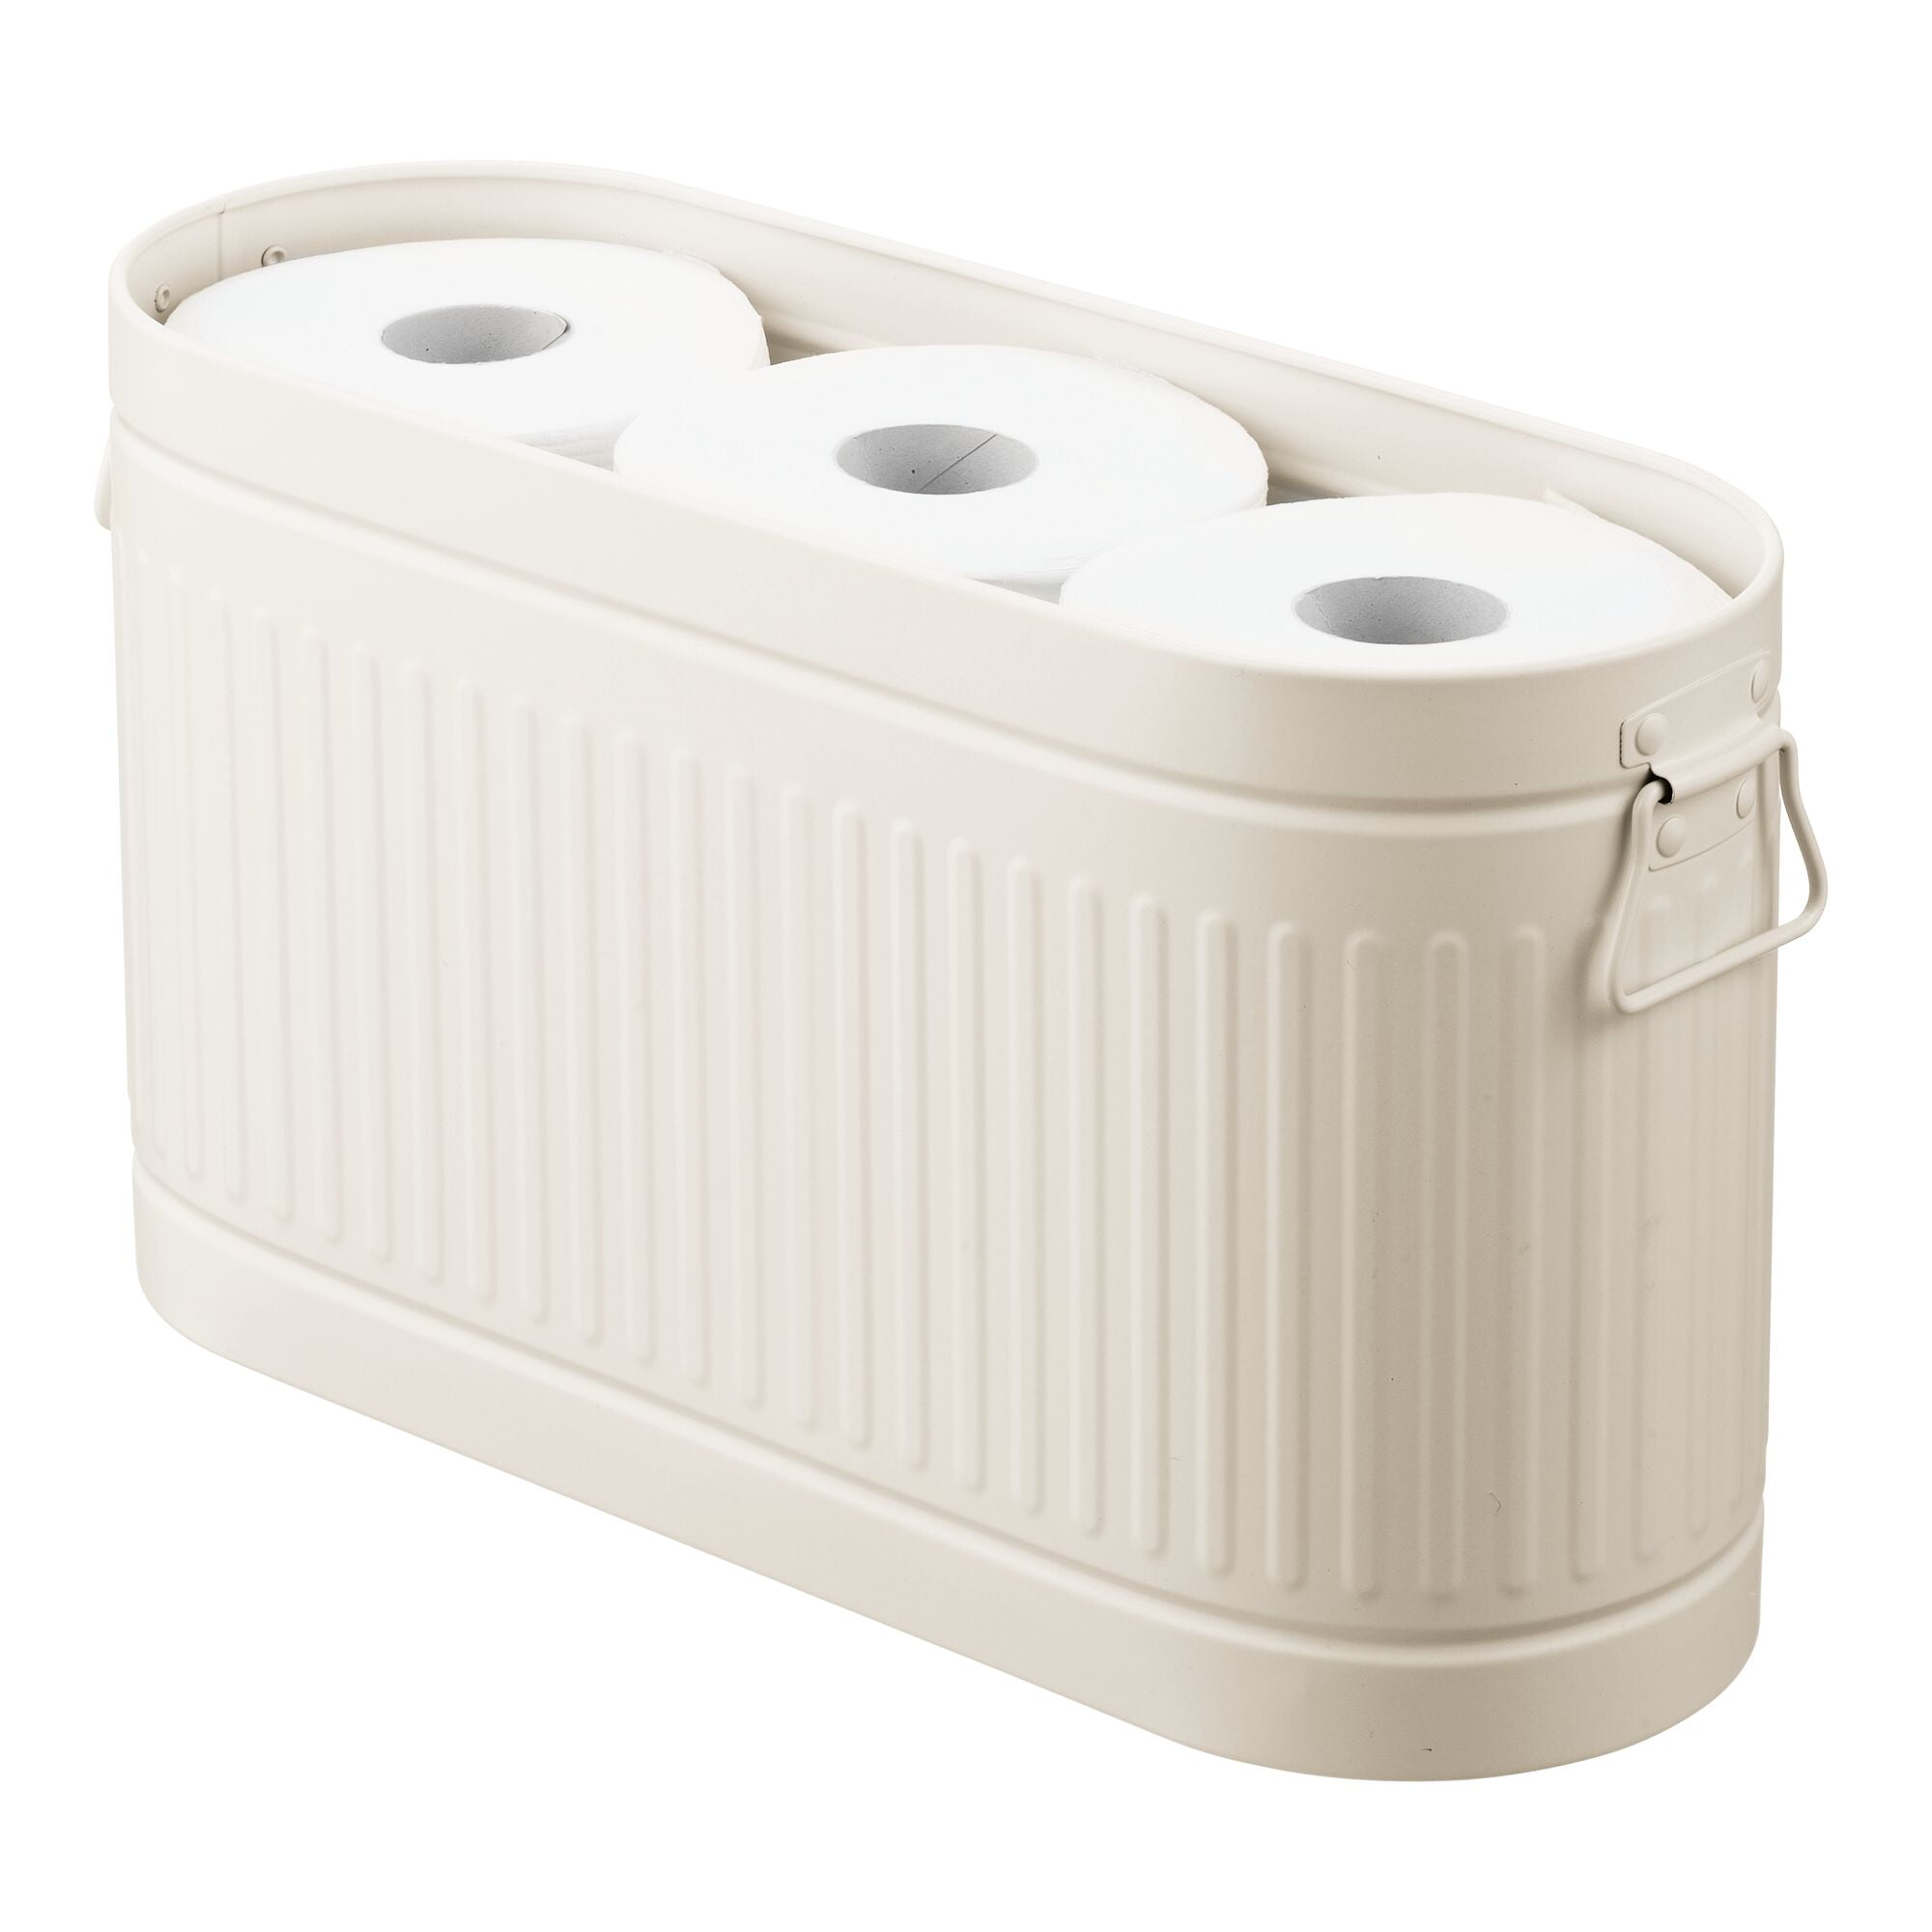 mDesign Toilet Roll Holder for 6 Rolls Freestanding Metal Bathroom Storage for Toilet Roll White Compact Toilet Roll Storage for Main or Guest Bathroom 